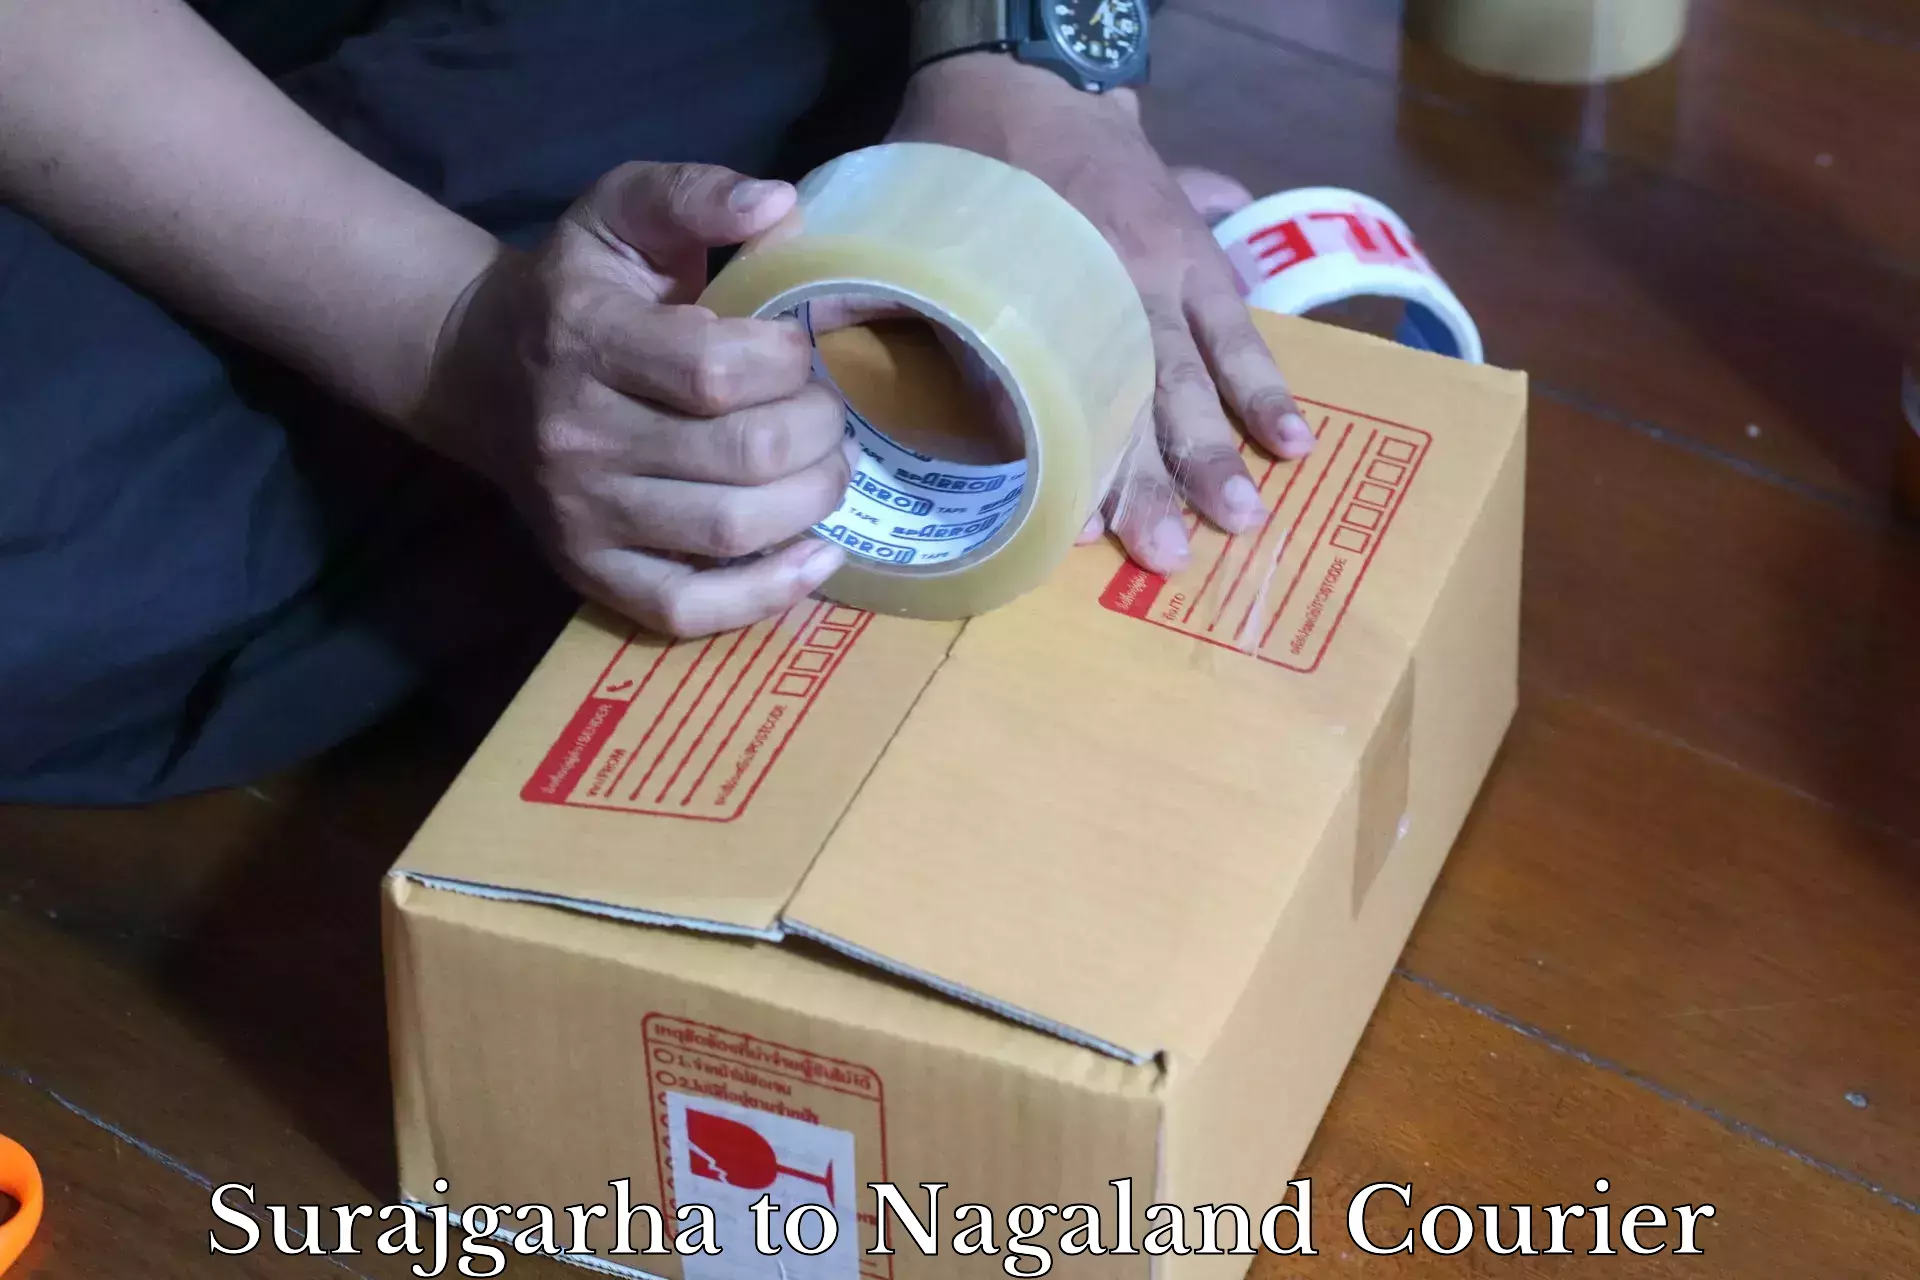 Cargo courier service Surajgarha to Nagaland